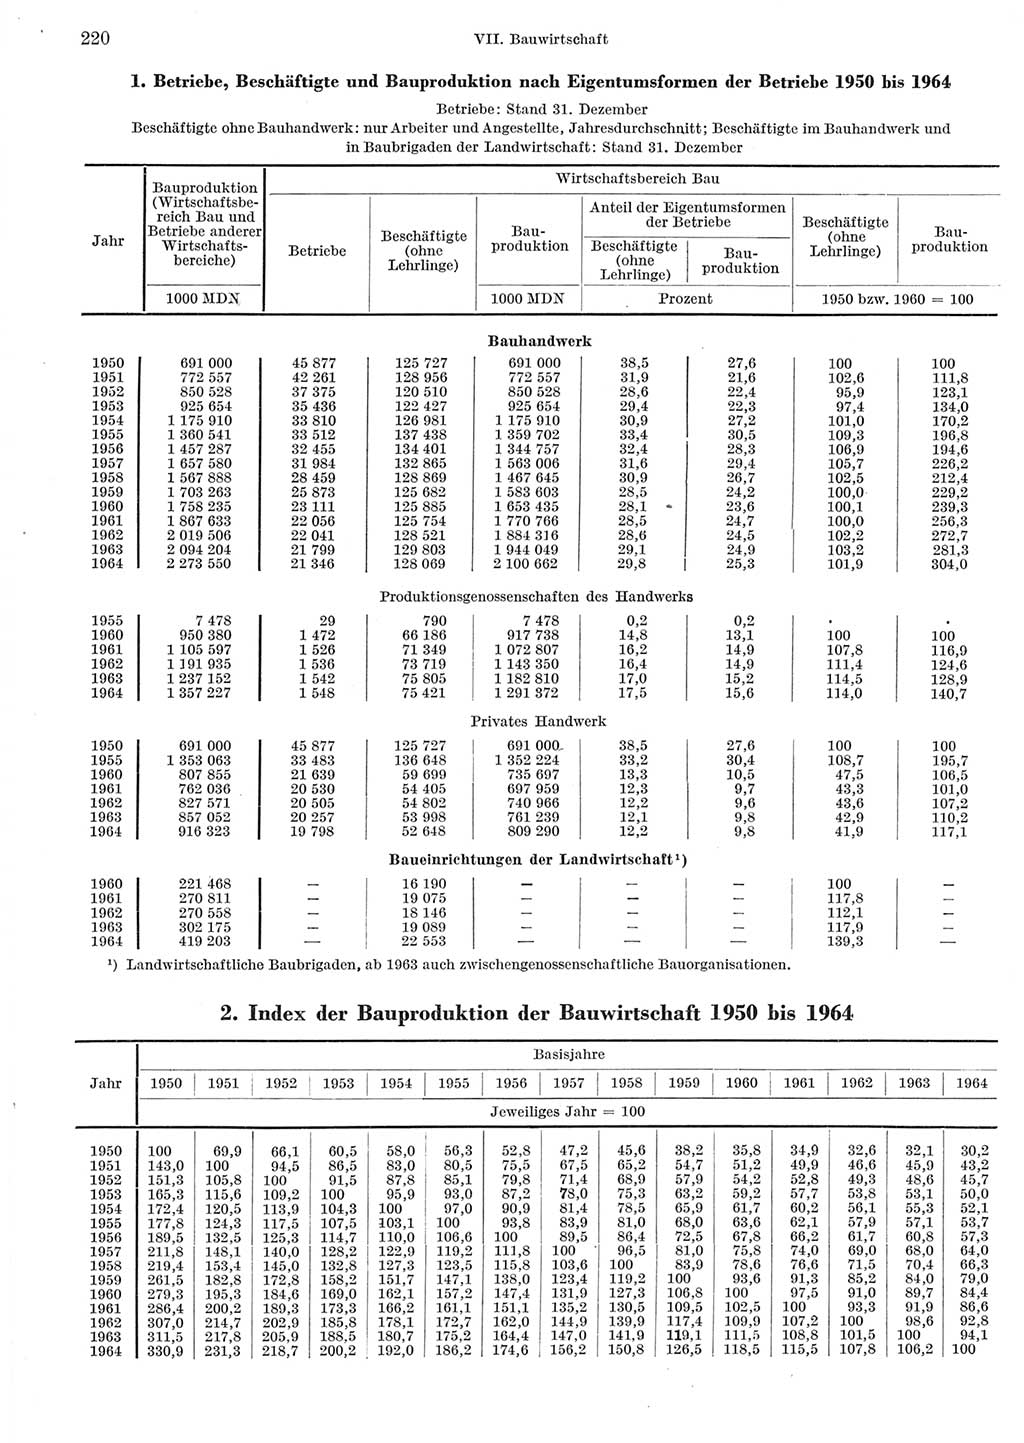 Statistisches Jahrbuch der Deutschen Demokratischen Republik (DDR) 1965, Seite 220 (Stat. Jb. DDR 1965, S. 220)